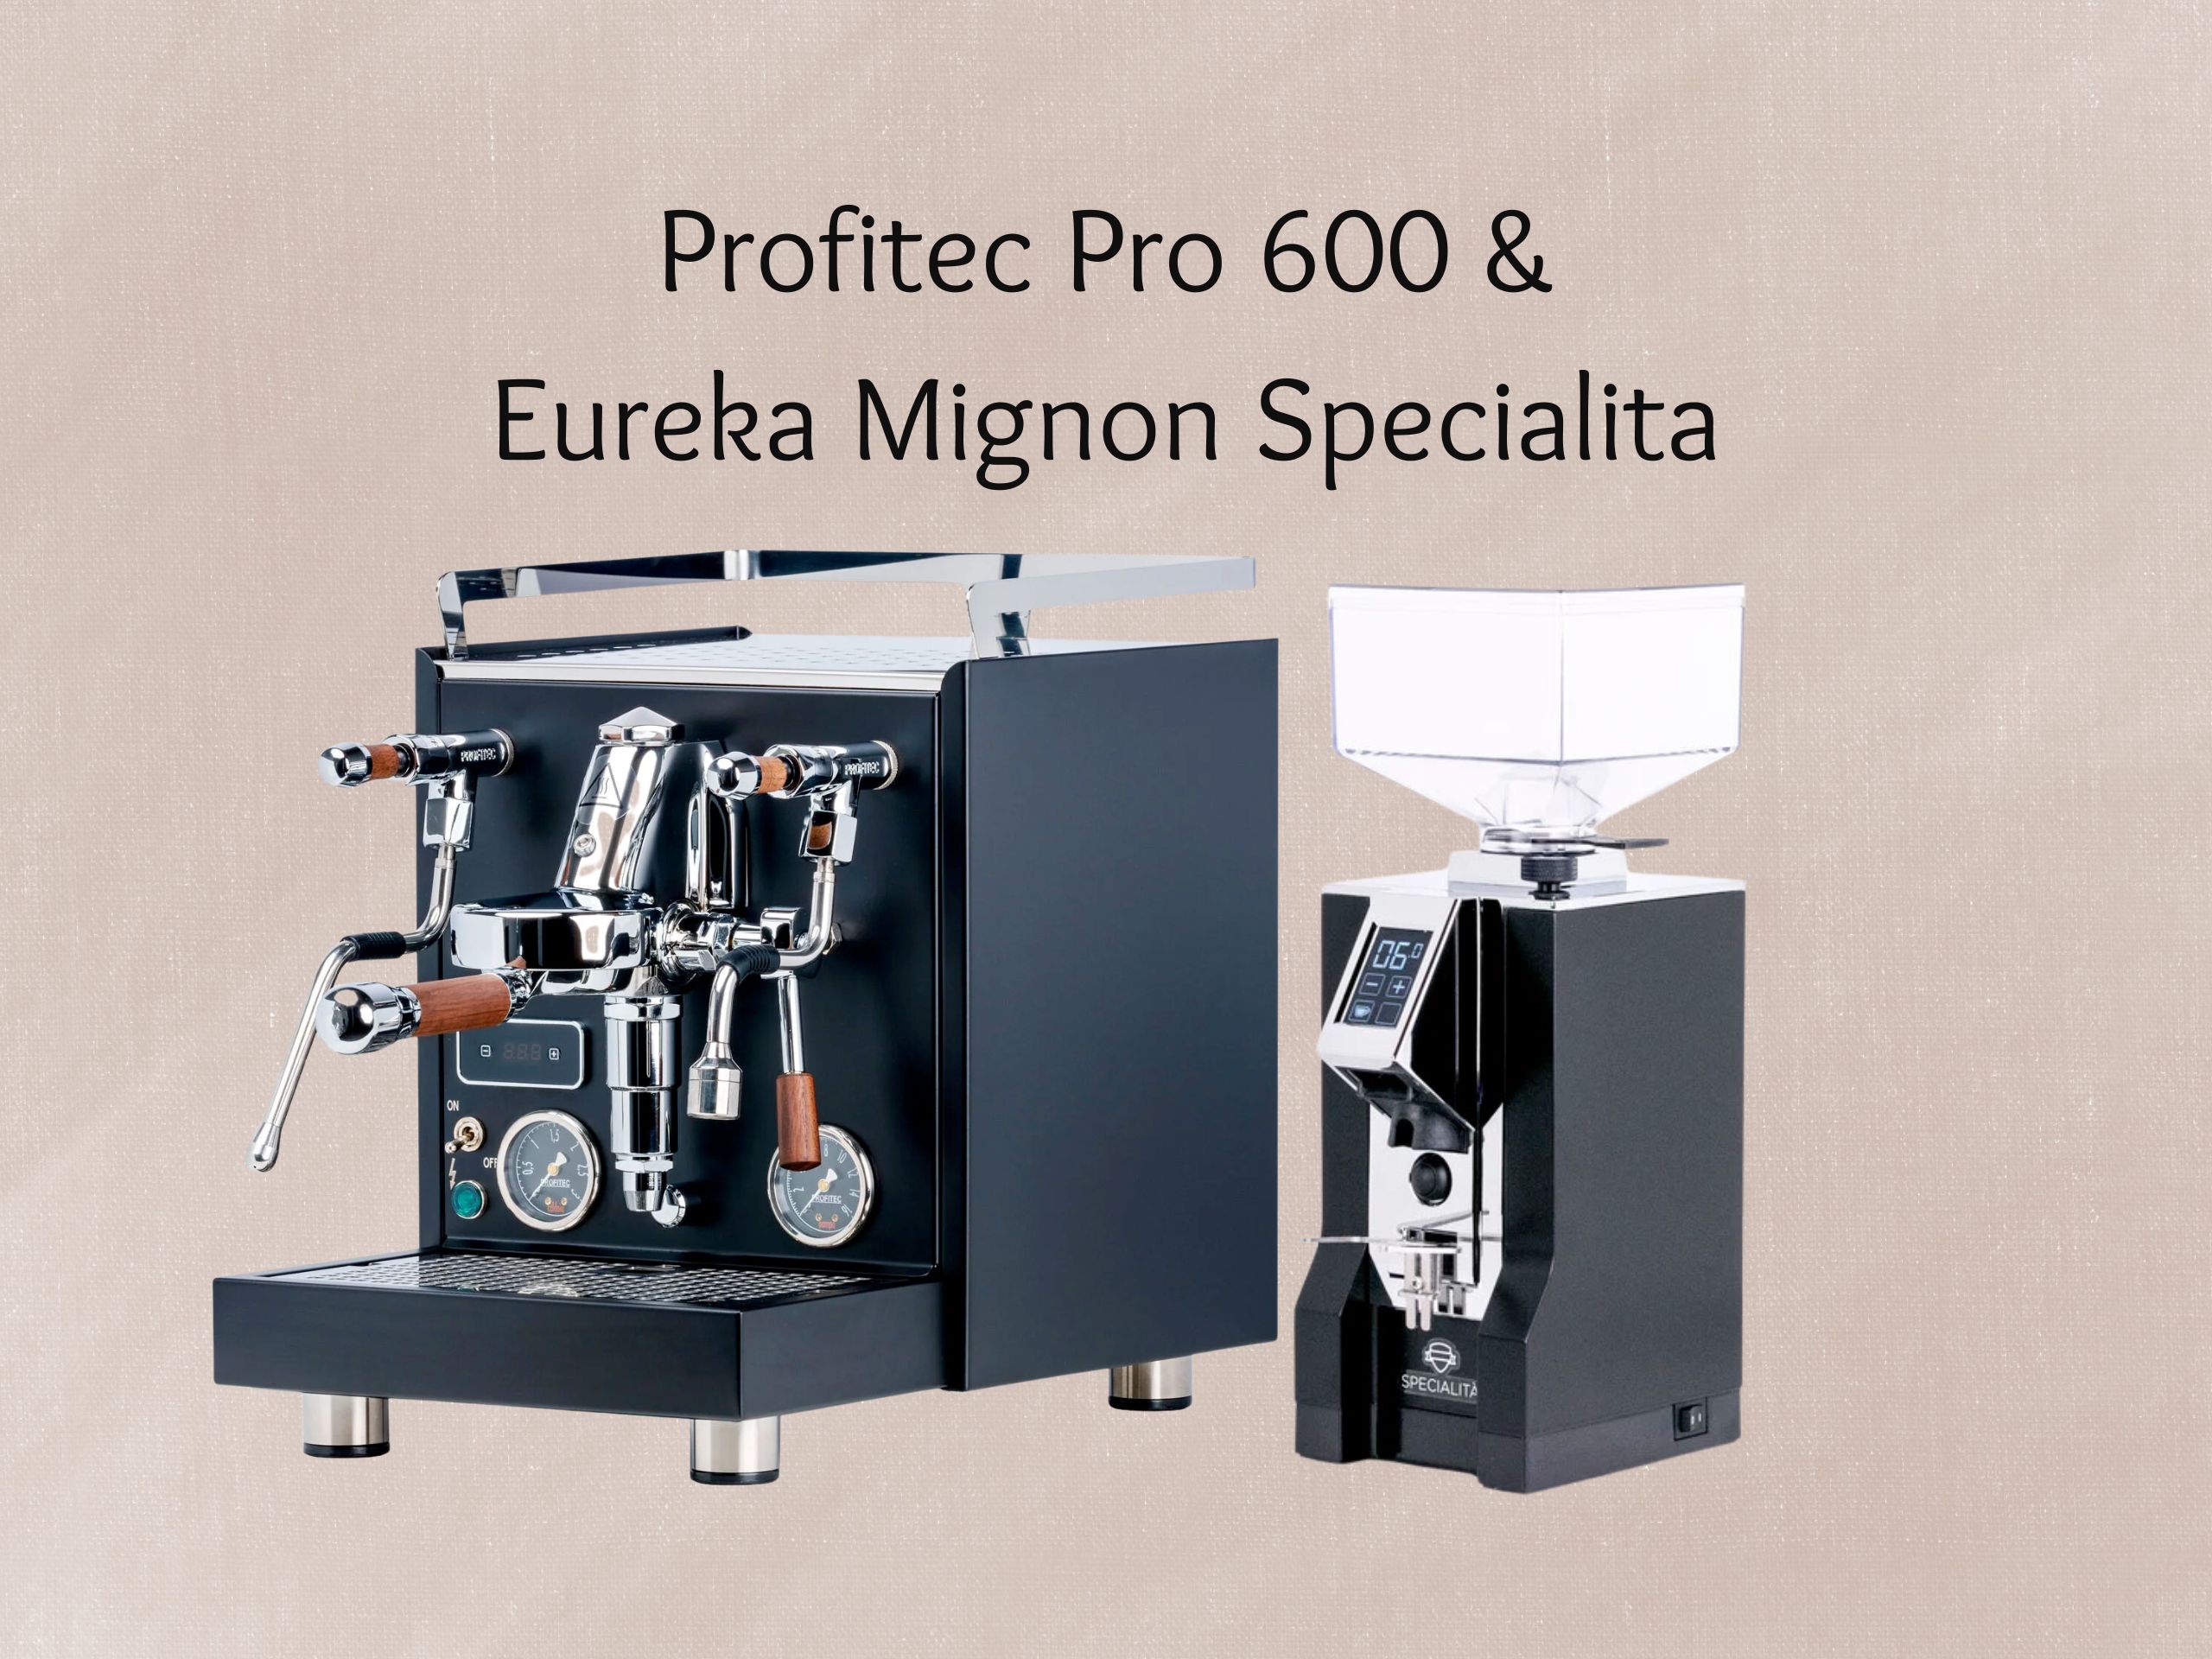 Profitec Pro 600 & Eureka Mignon Specialita